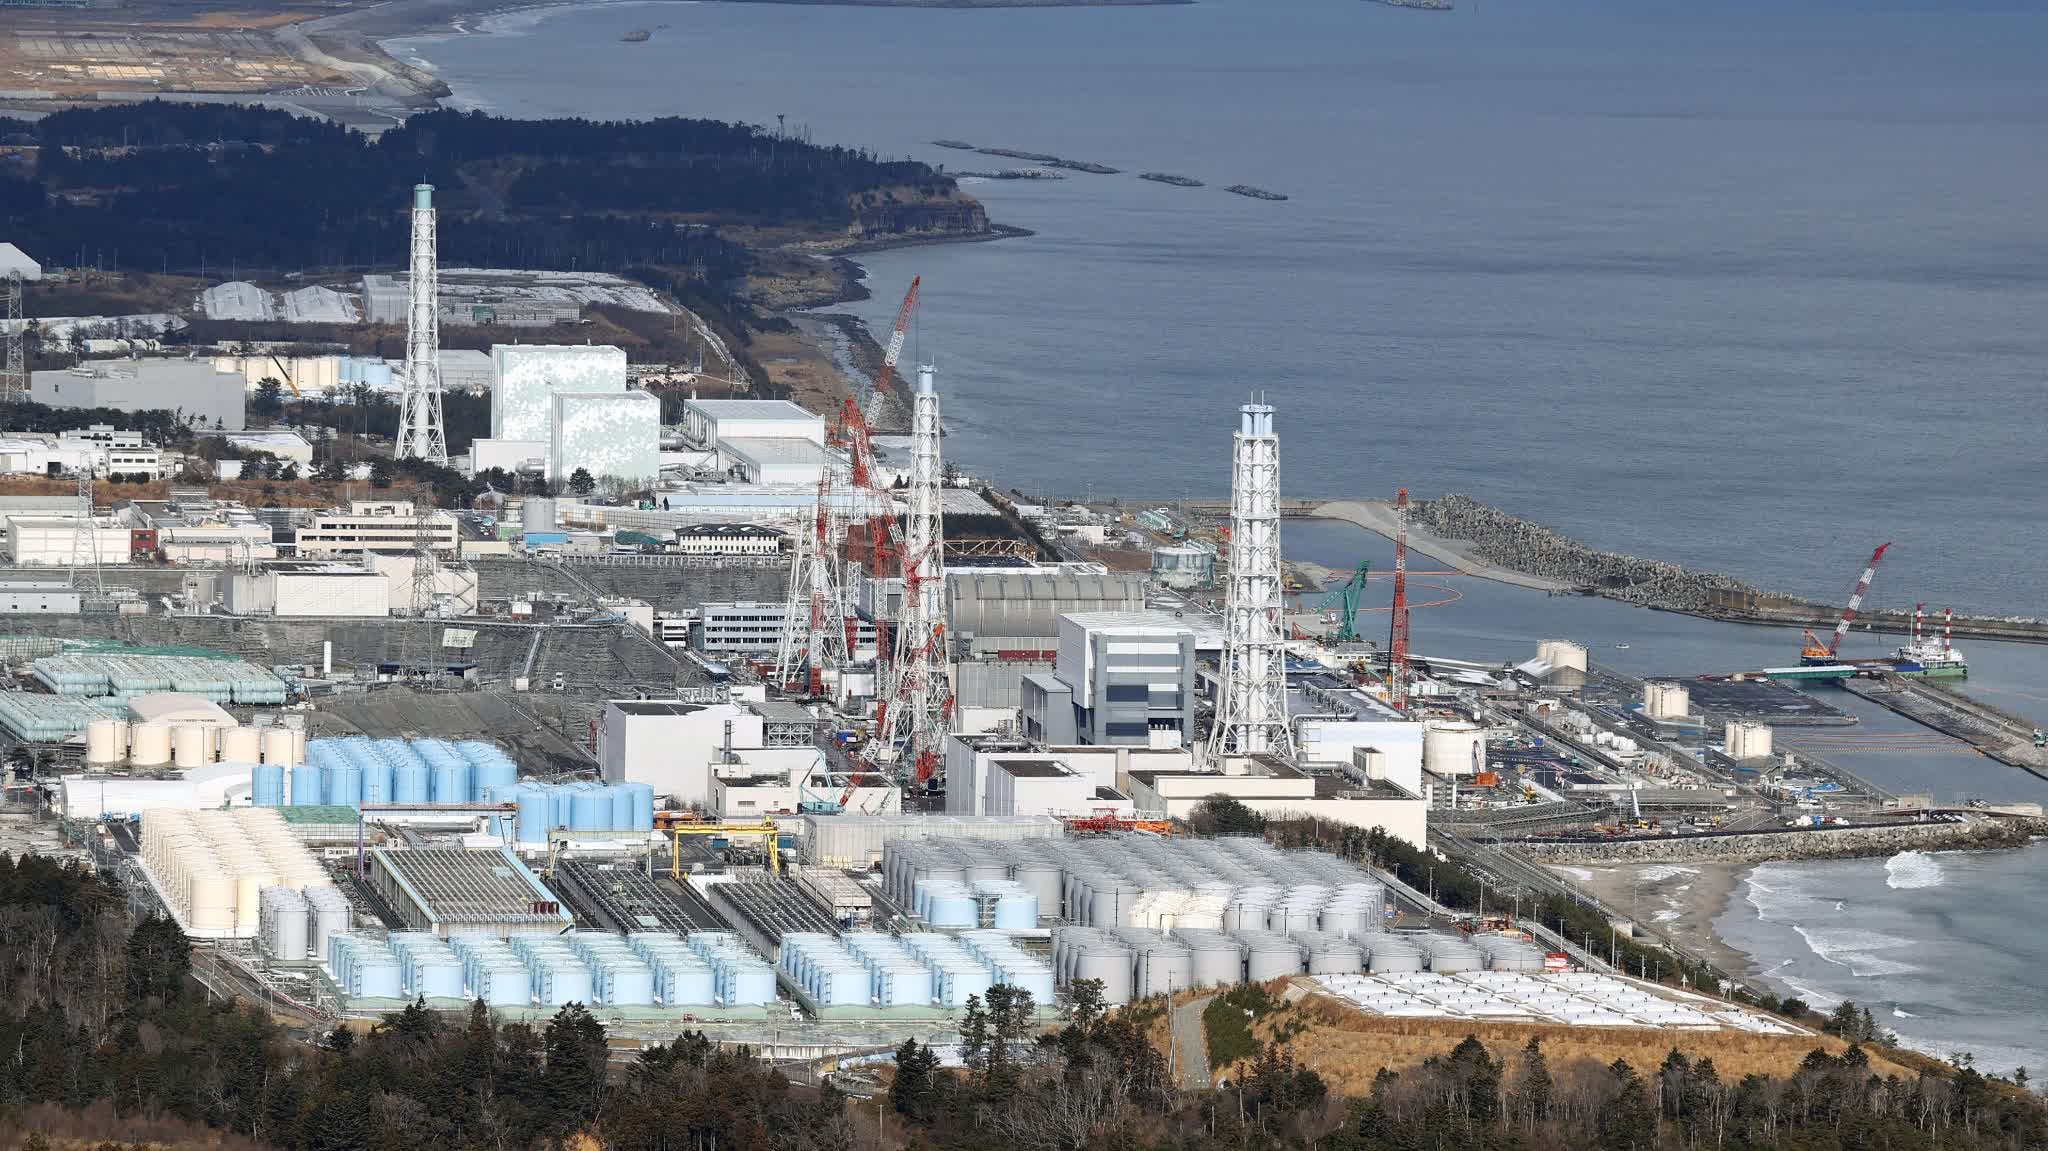 福岛第一核电站事故